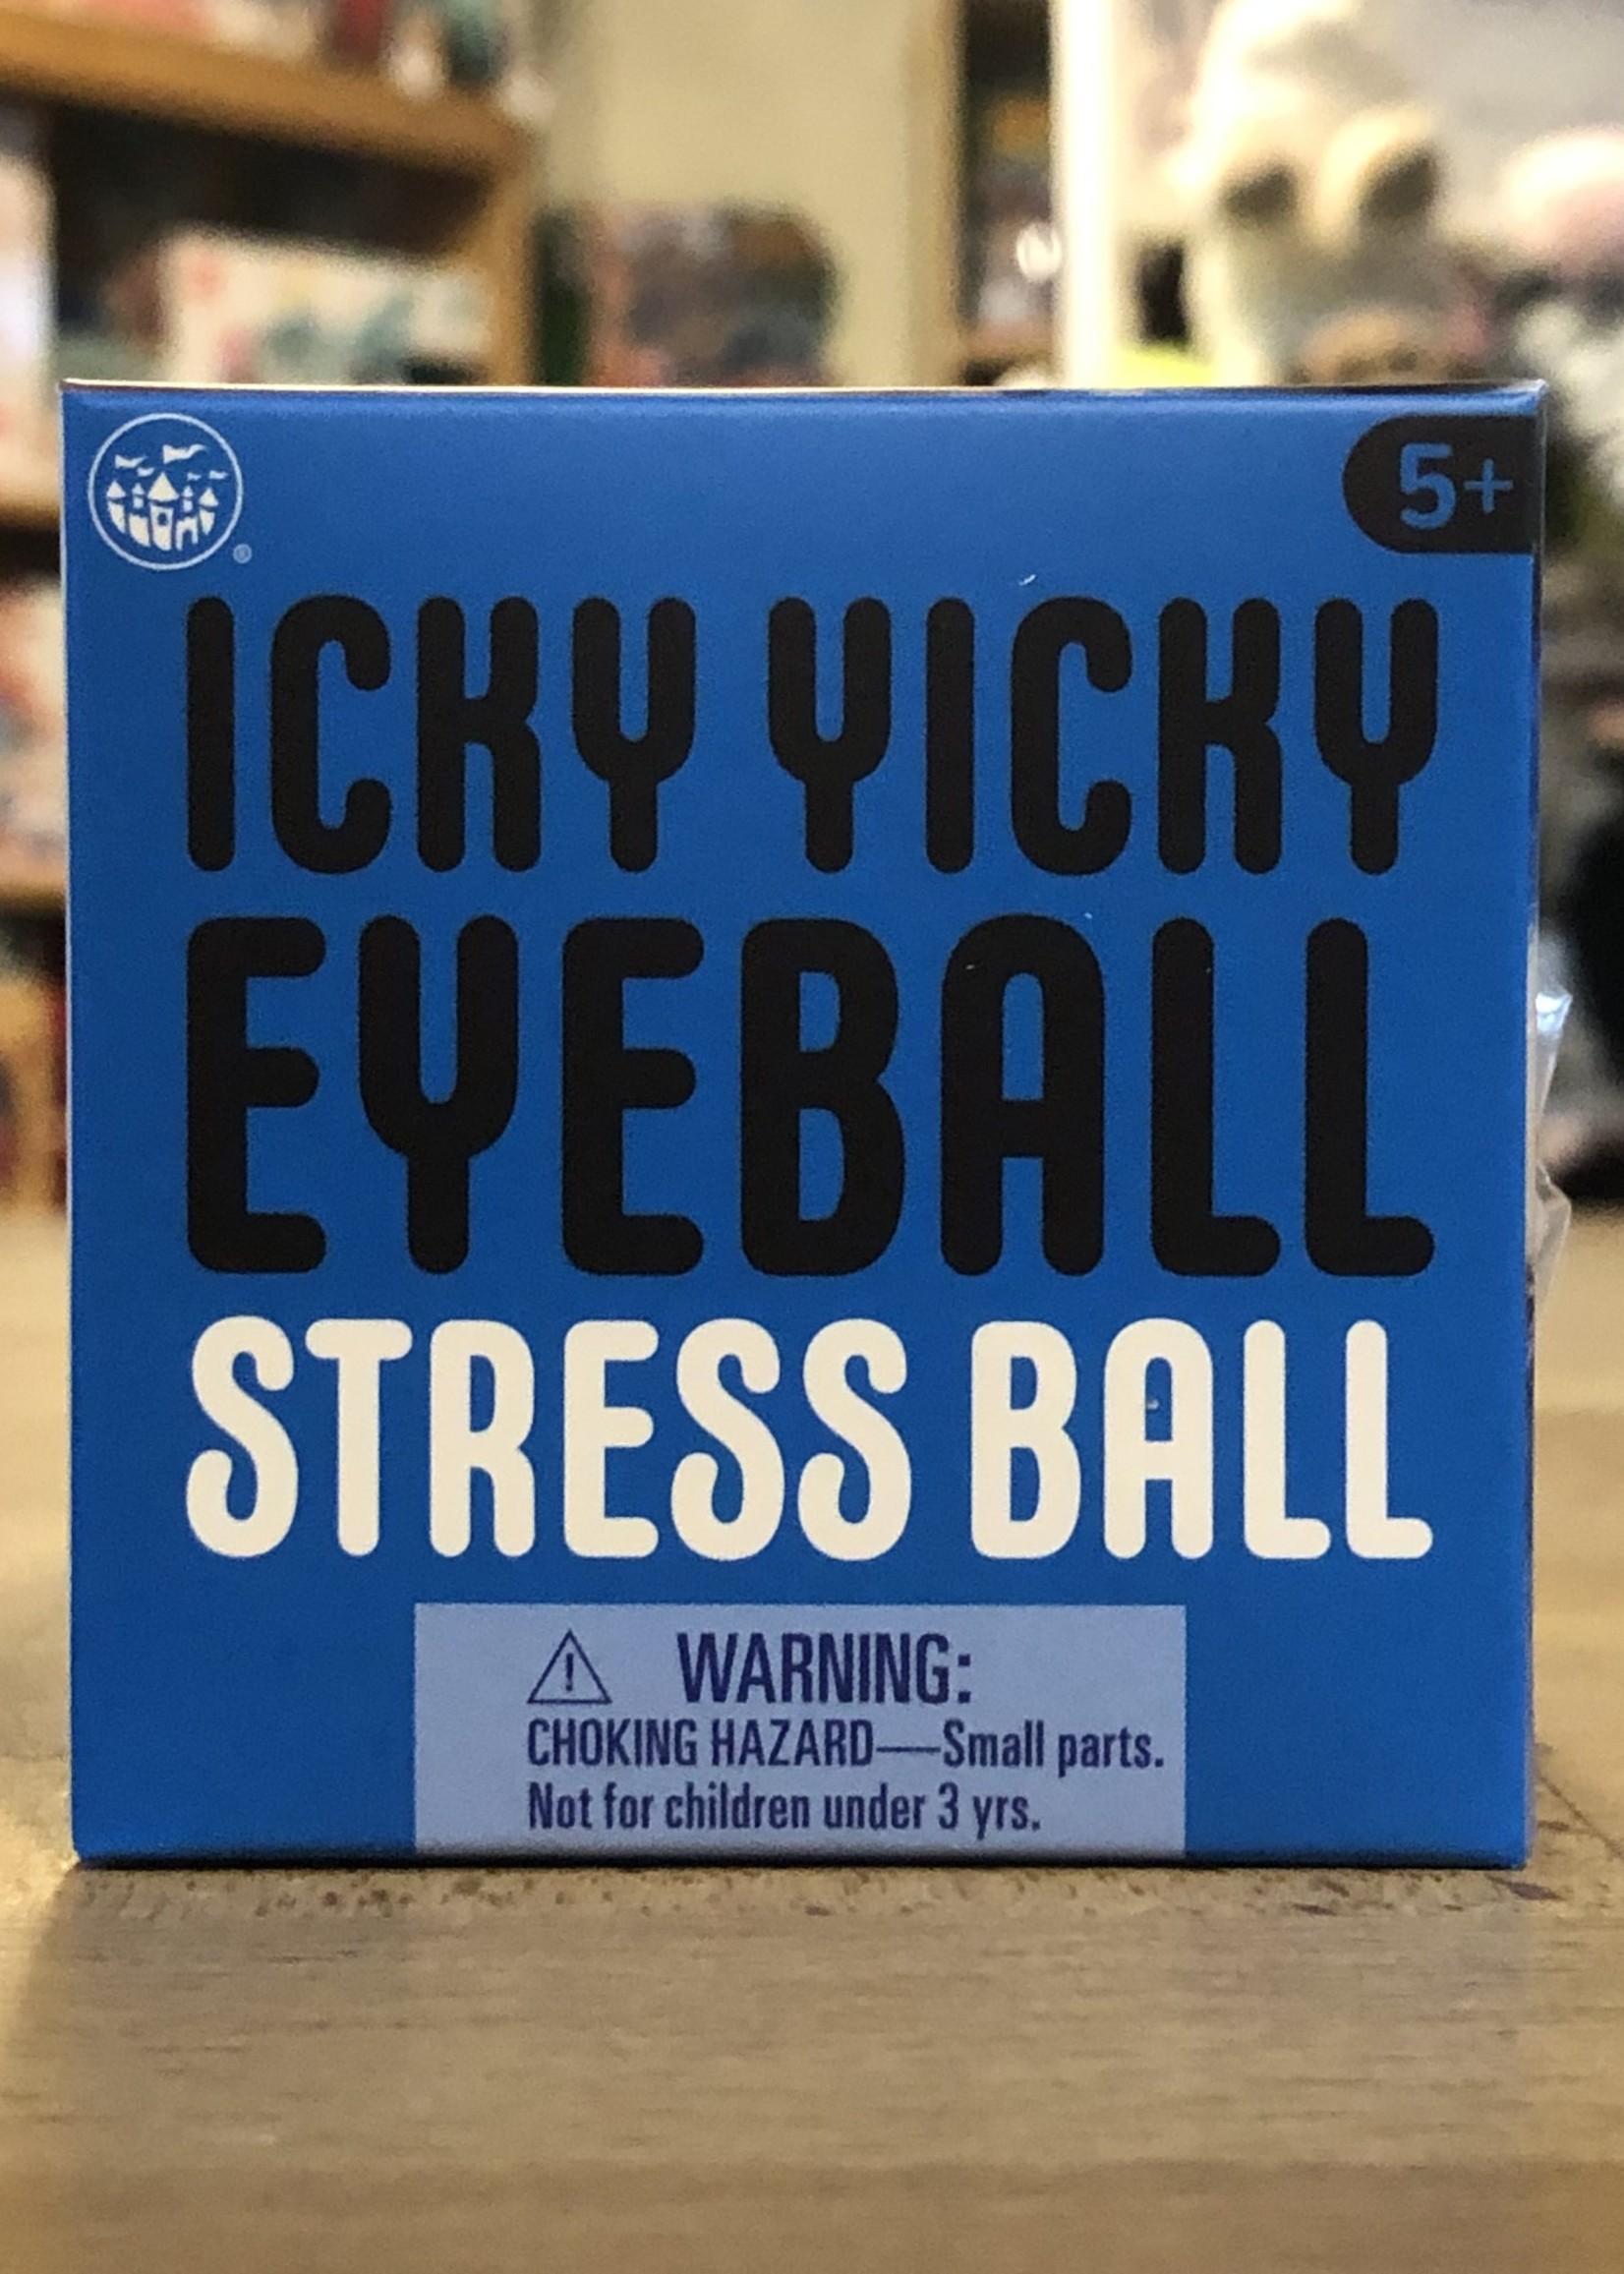 Odd Ballz - Icky Yicky Eyeballs